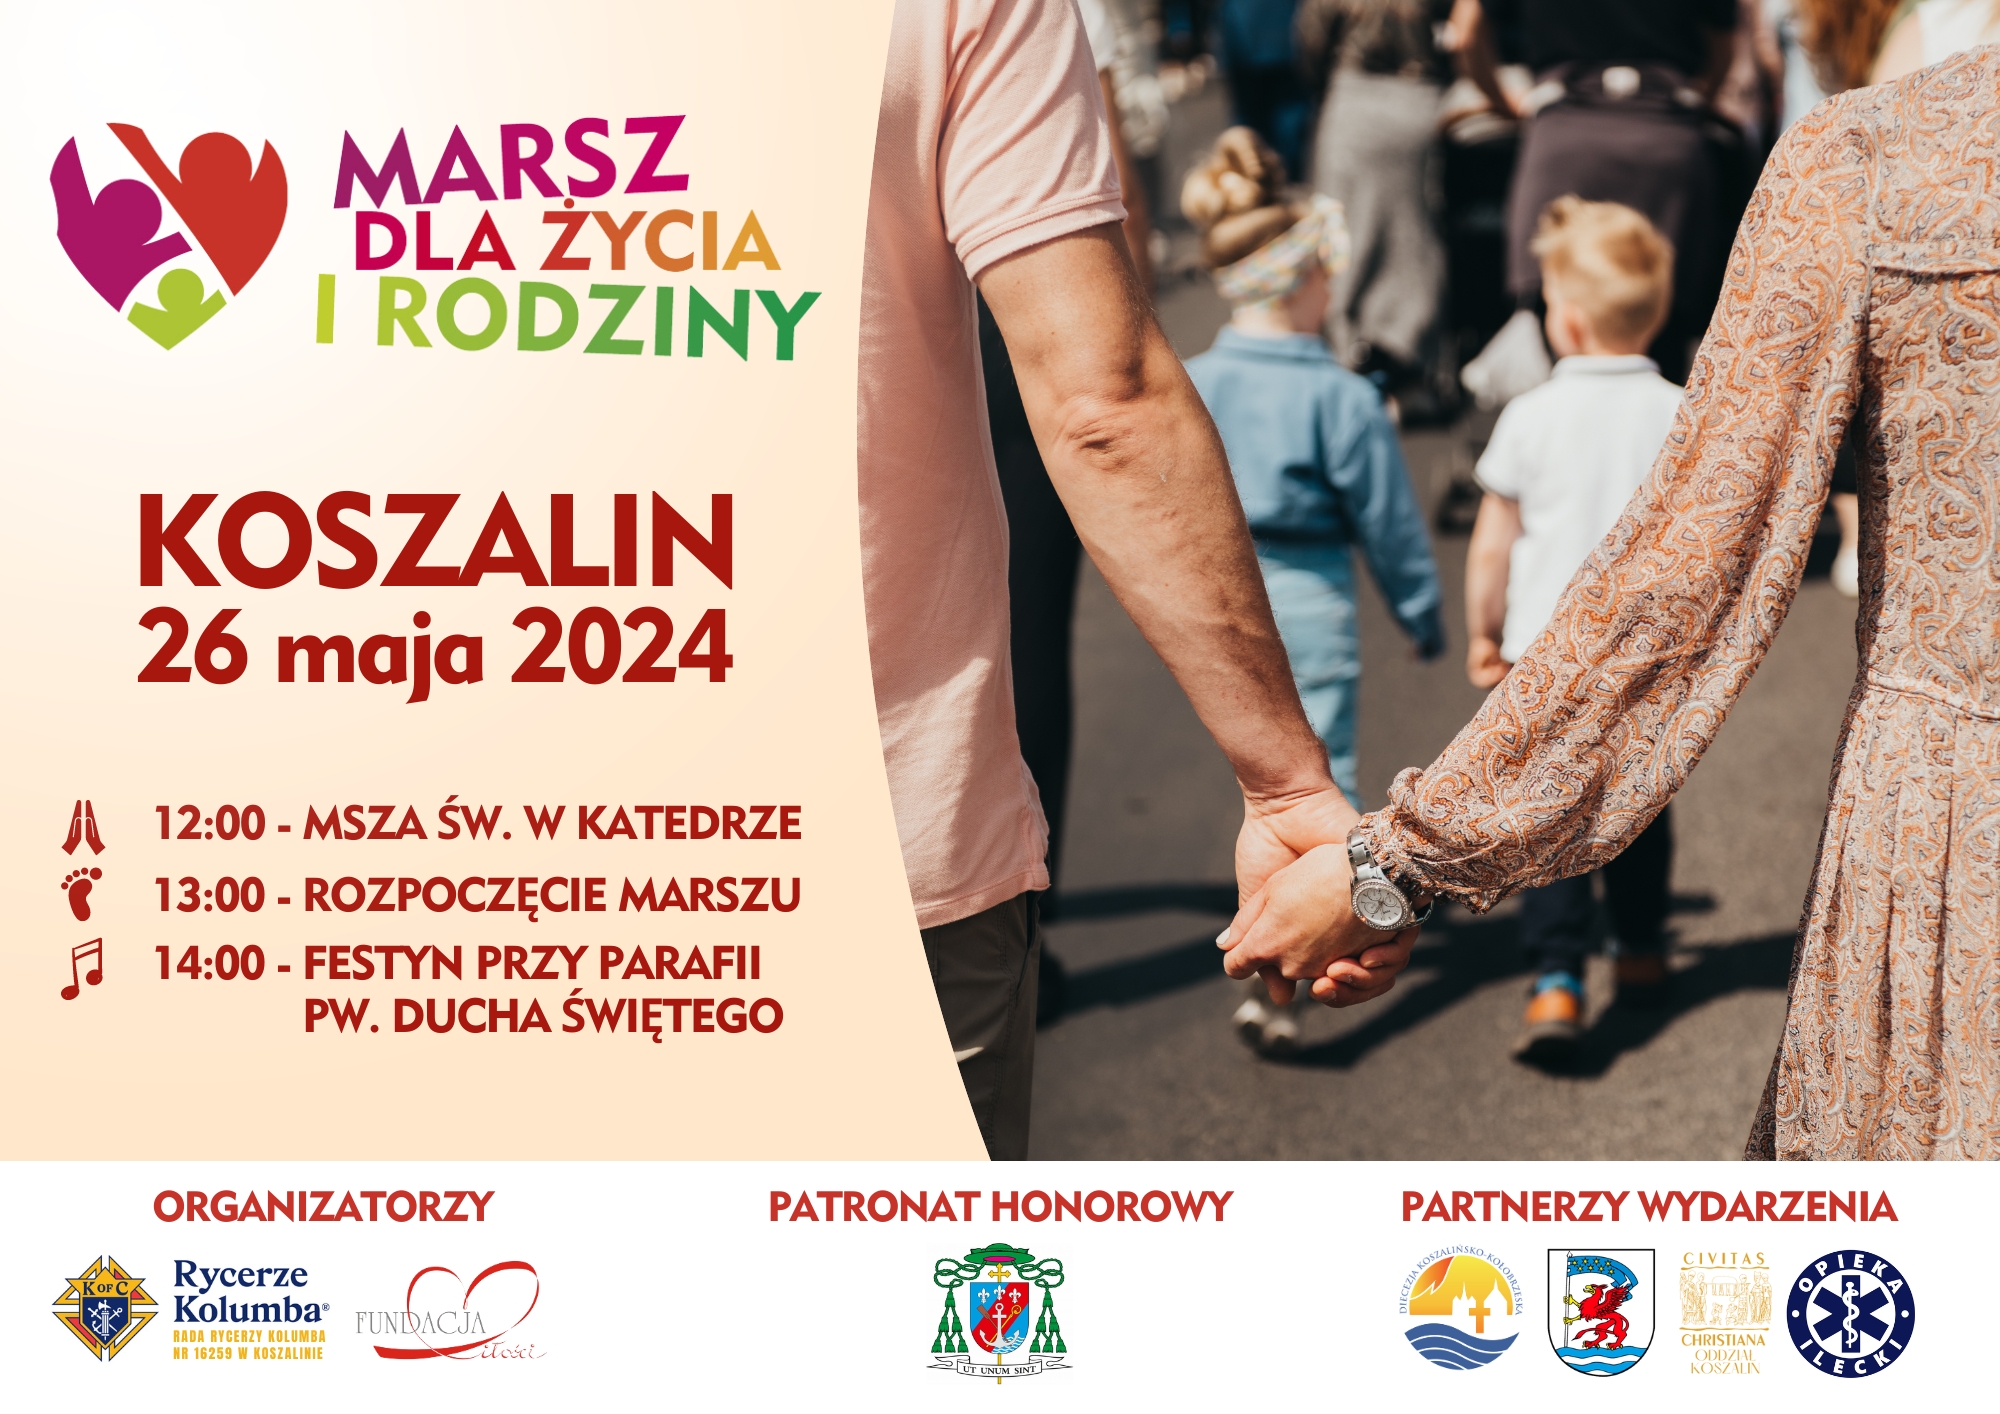 Plakat z zaproszeniem na marsz dla życia i rodziny 26 maja 2024 w Koszalinie